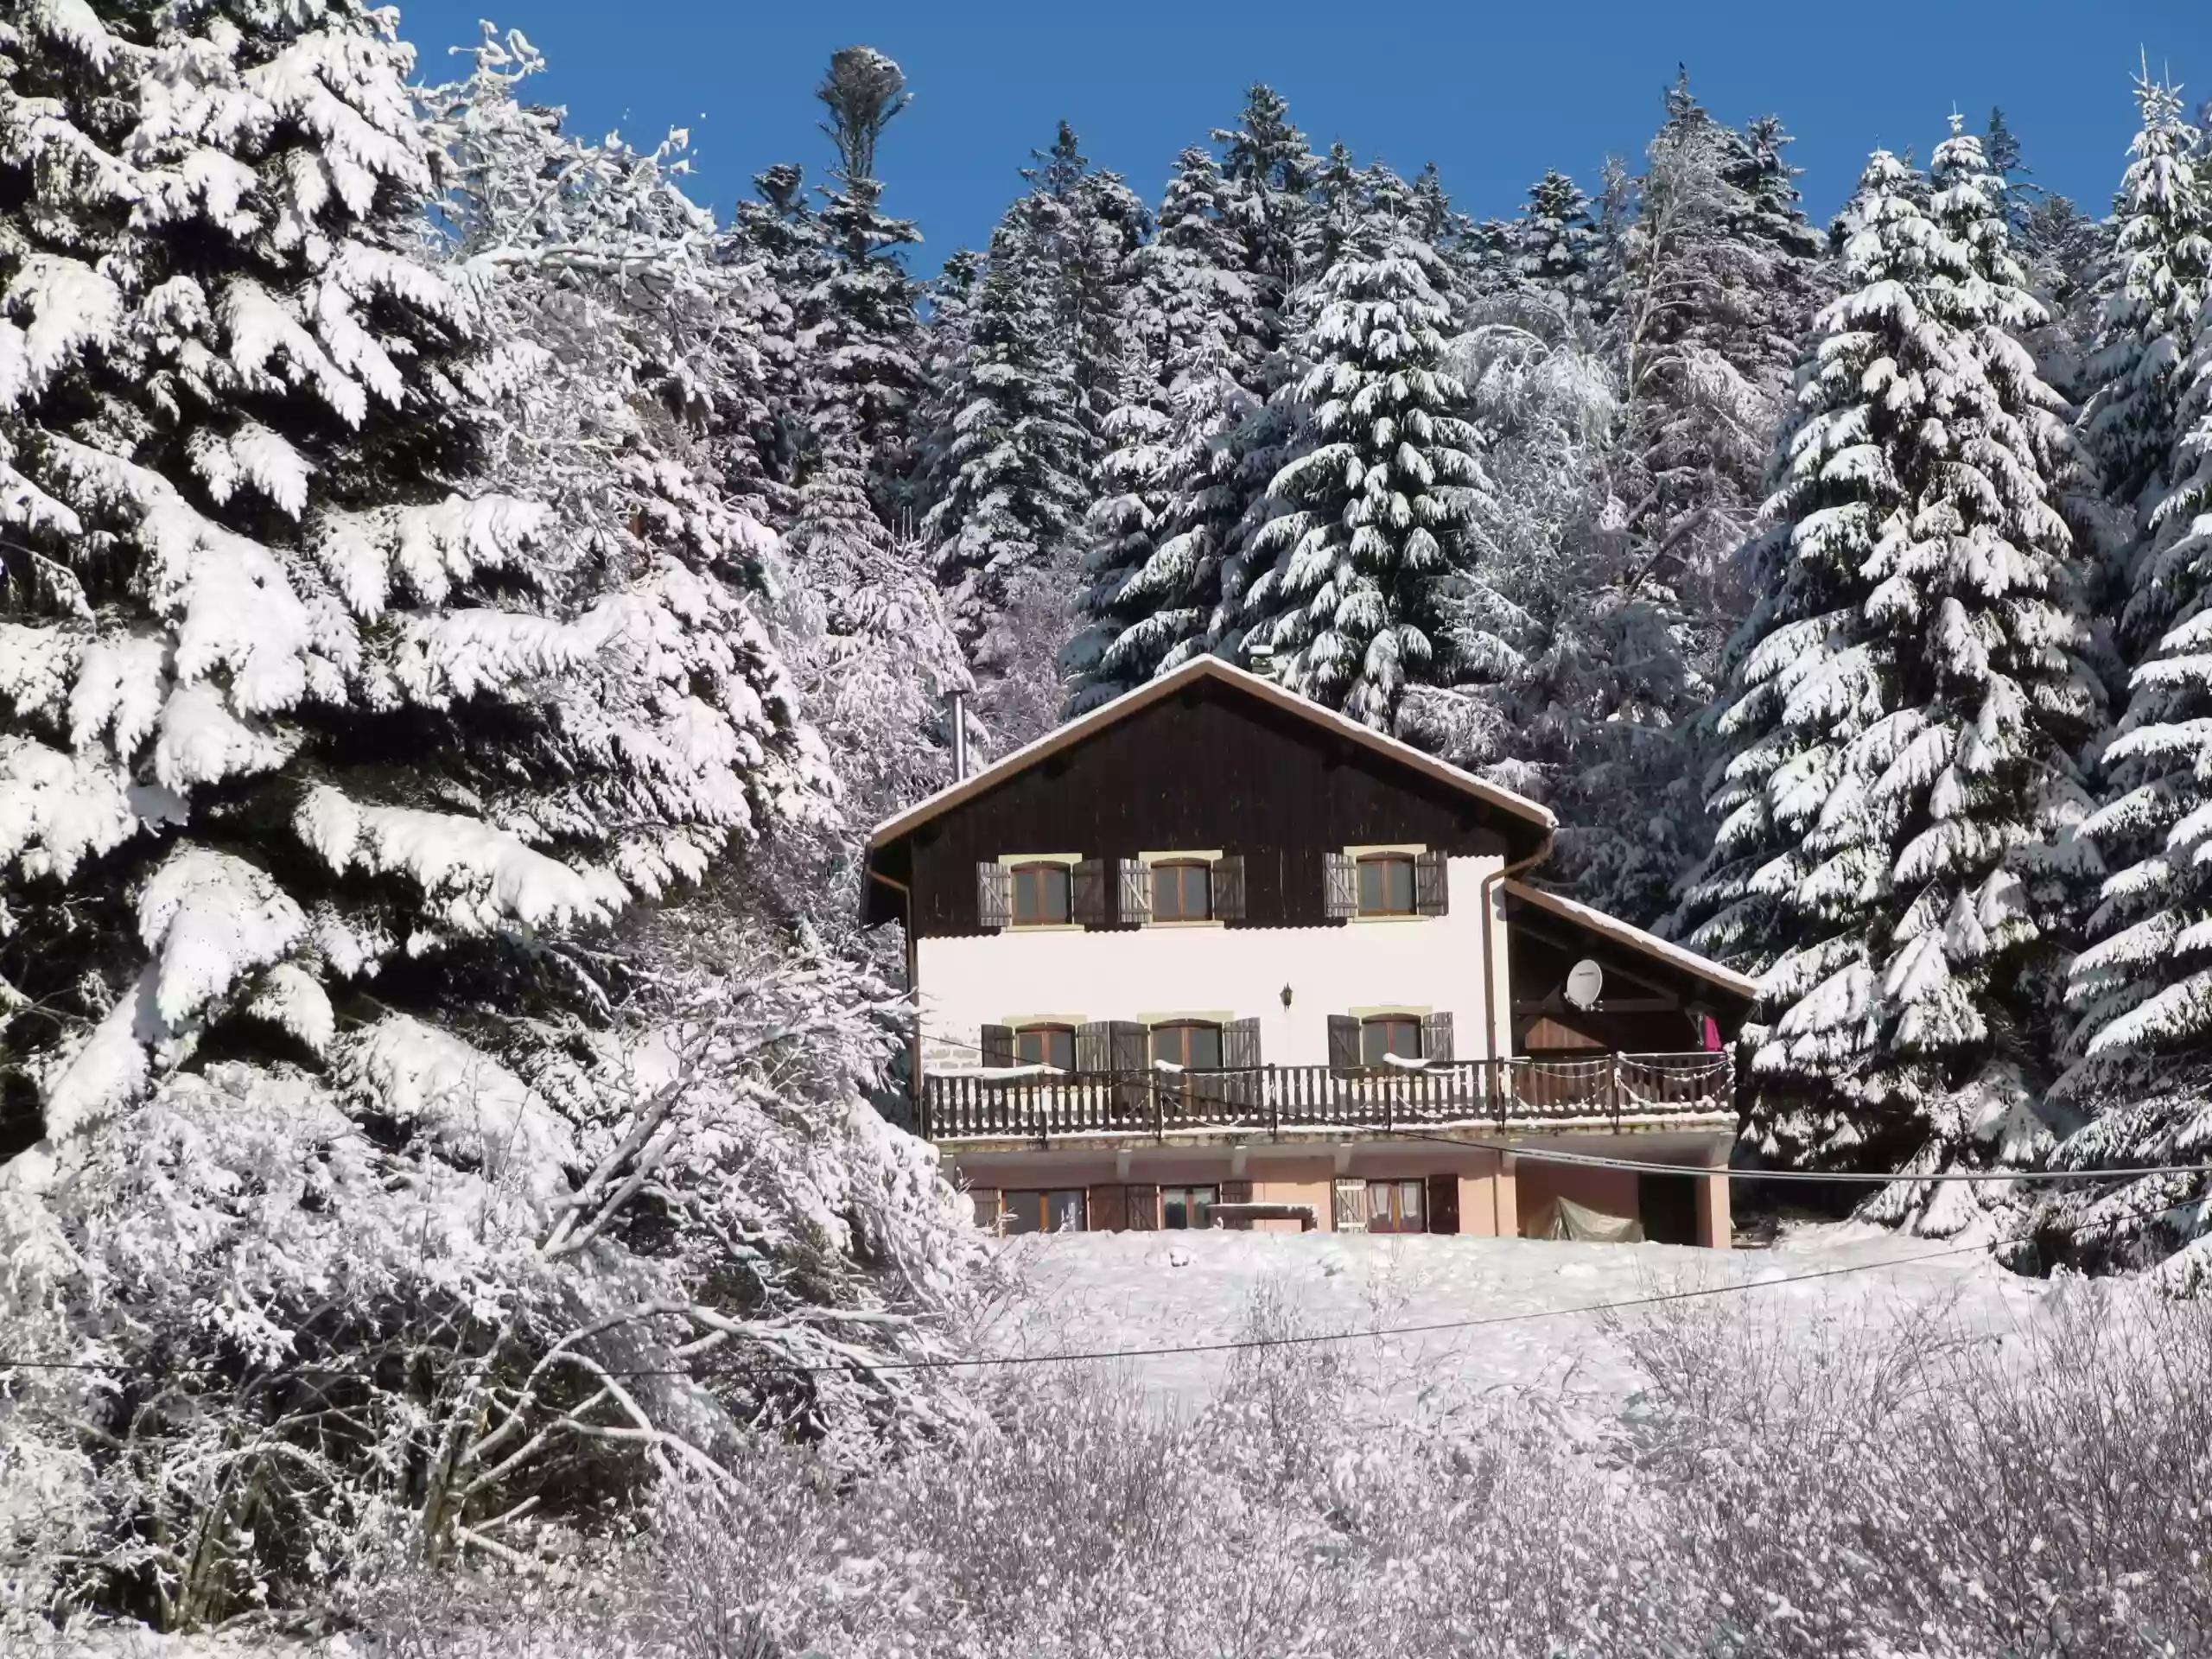 DGV : Destinations Gîtes Vacances - Appartement, Gite, Chalet, Maison, proche station ski, lac Gérardmer, La Bresse, Vosges